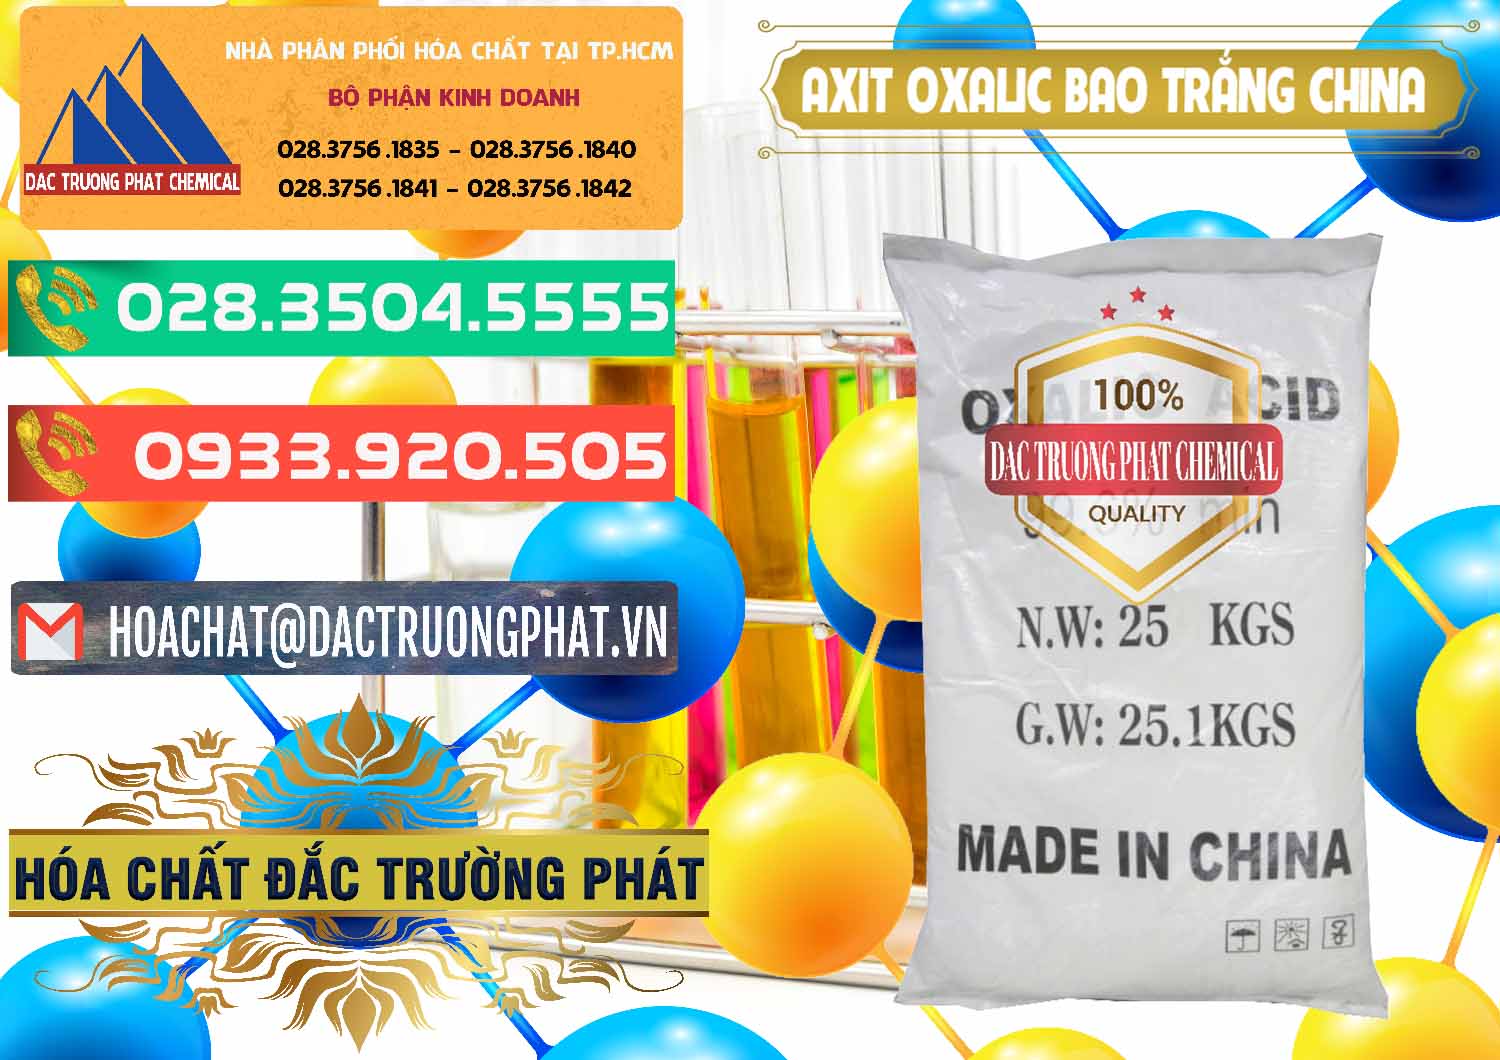 Công ty nhập khẩu ( bán ) Acid Oxalic – Axit Oxalic 99.6% Bao Trắng Trung Quốc China - 0270 - Nơi phân phối & cung cấp hóa chất tại TP.HCM - congtyhoachat.com.vn